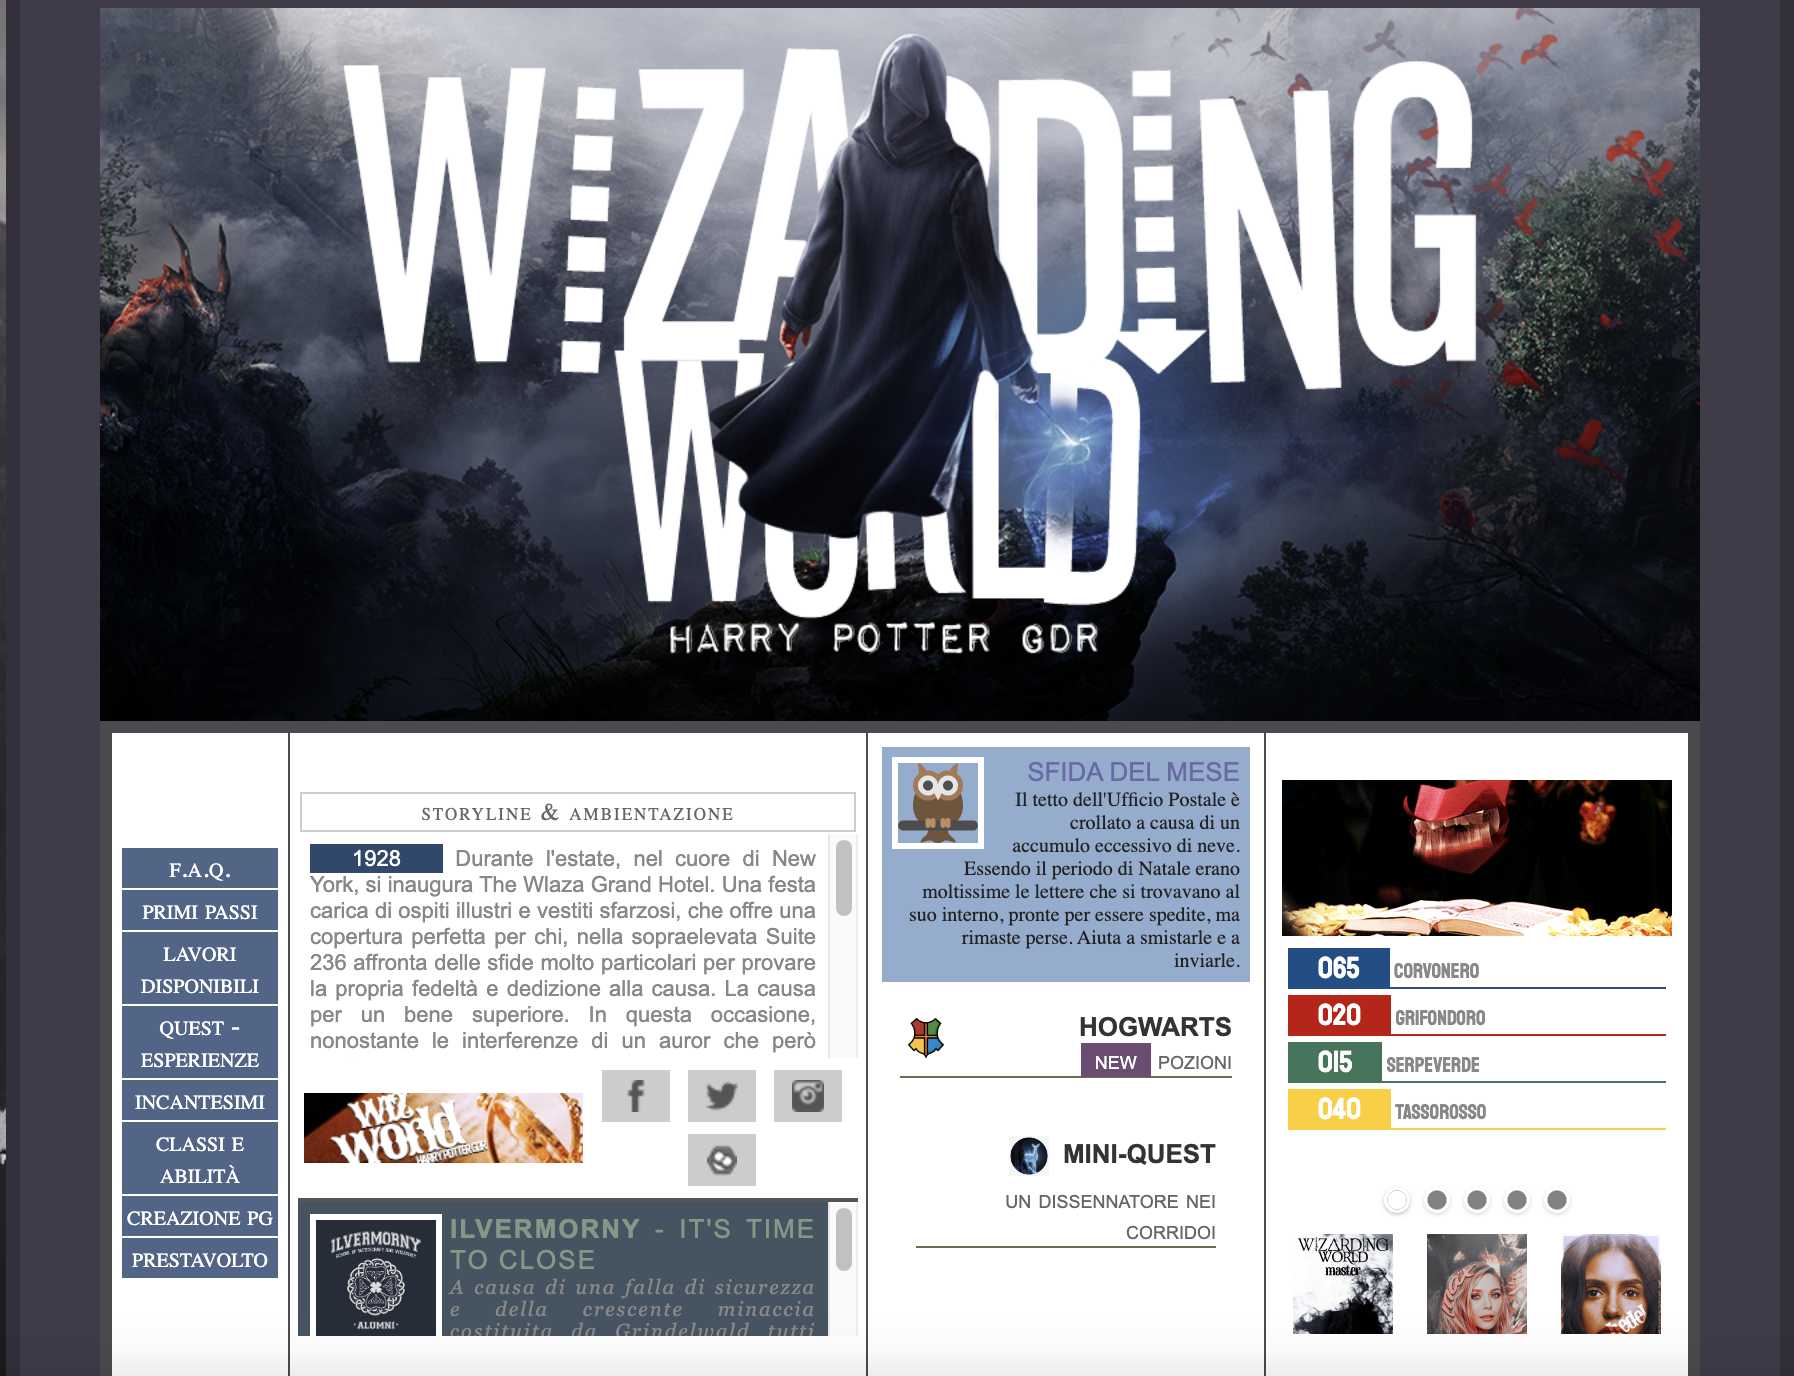 Wizarding World - Harry Potter GDR